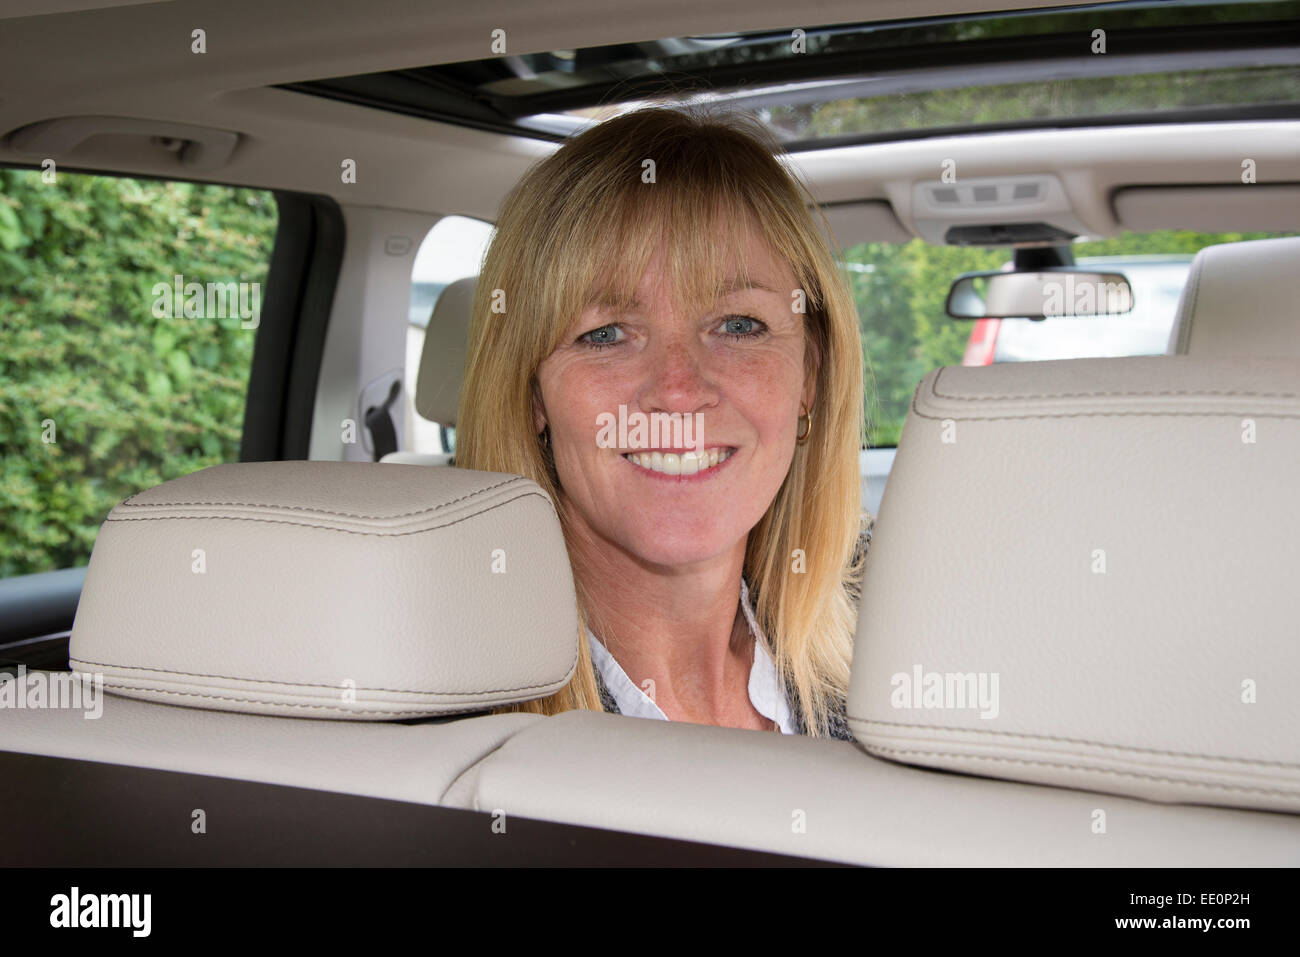 Kopfstütze Auf Einem Autositz Stockfoto - Bild von fahrzeug